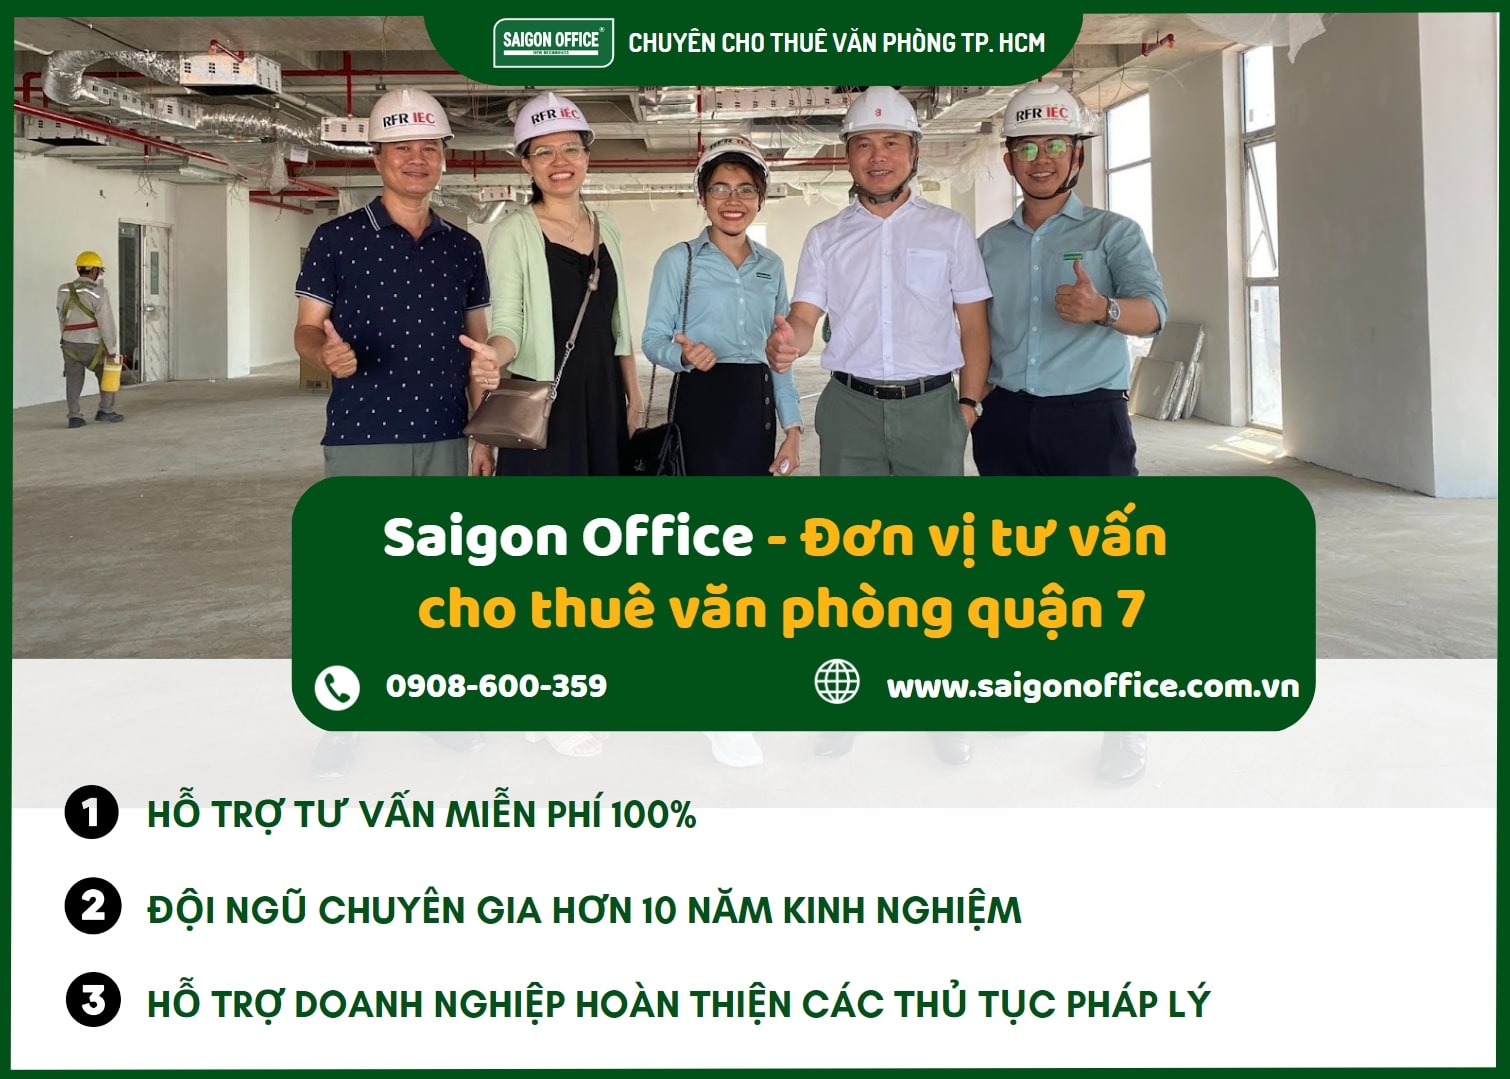 Lựa chọn dịch vụ tư vấn tìm văn phòng quận 7 miễn phí tại Saigon Office